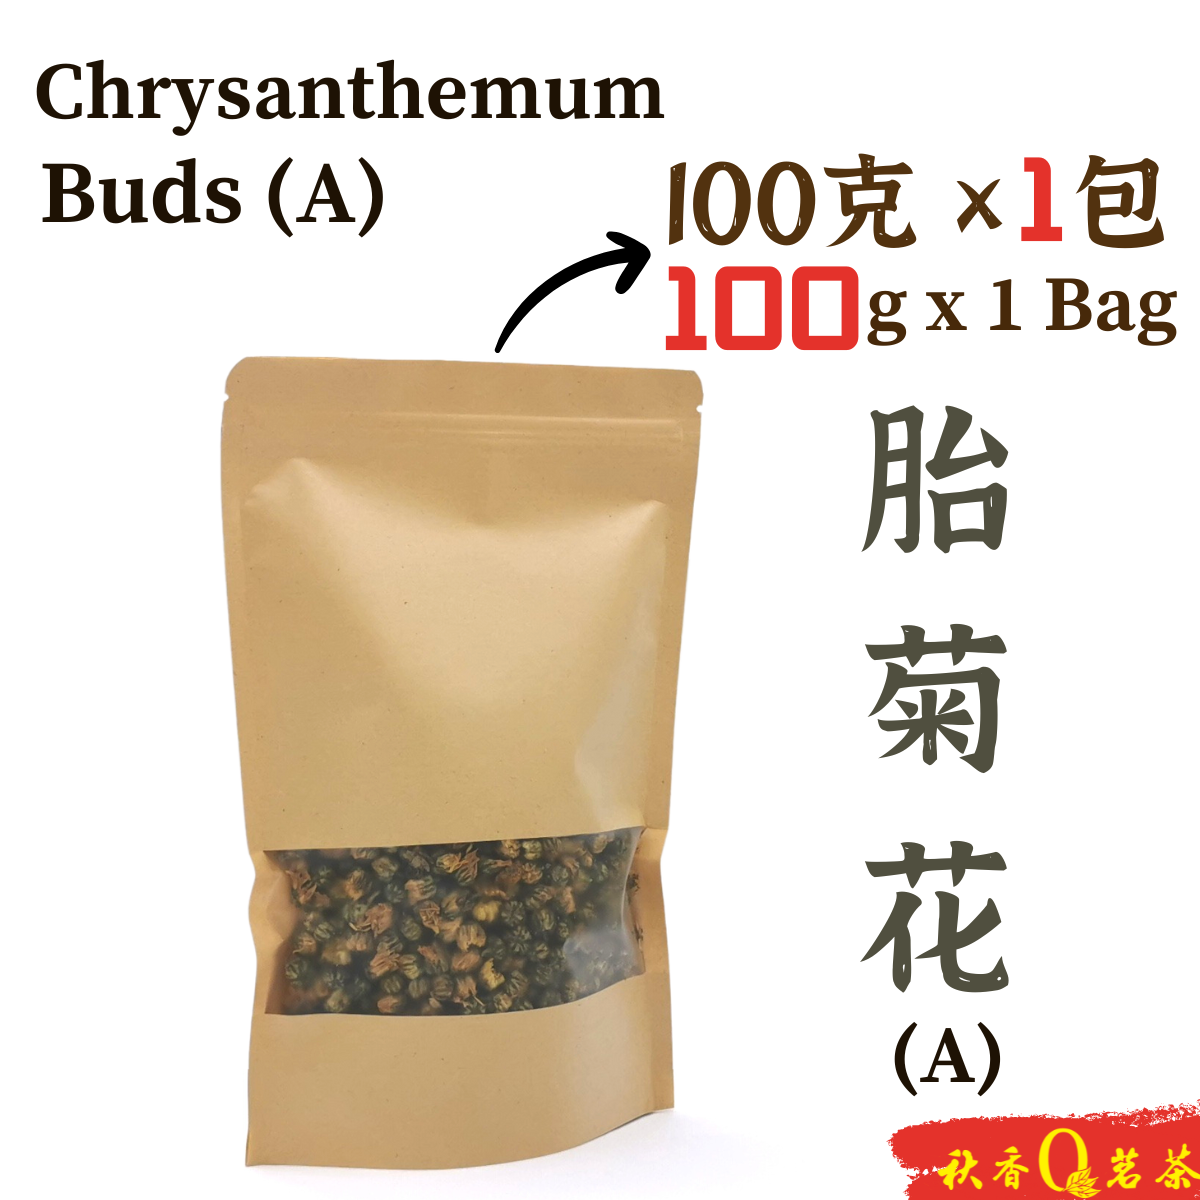 胎菊花 (A) Chrysanthemun Flower Tea Buds (A)【100g/500g】|【花草茶 Herbal tea】